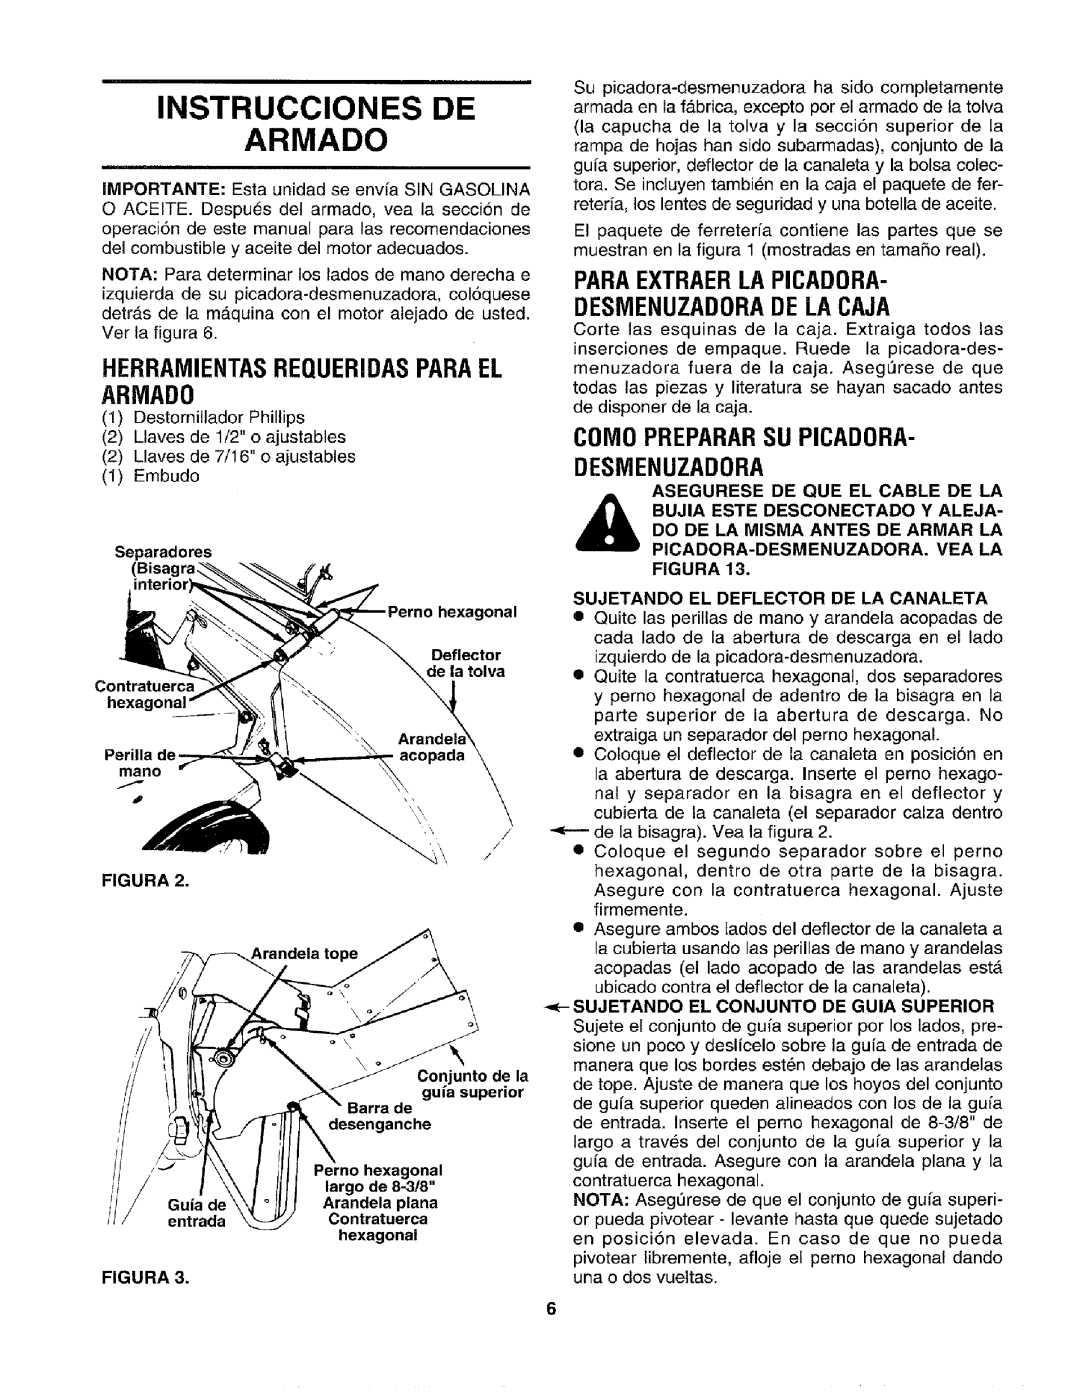 Craftsman 79585 Instrucciones De Armado, HERRAMIENTASREQUERIDASPARAEL ARMAD0, COM0 PREPARARSU PICADORA- DESMENUZADORA 